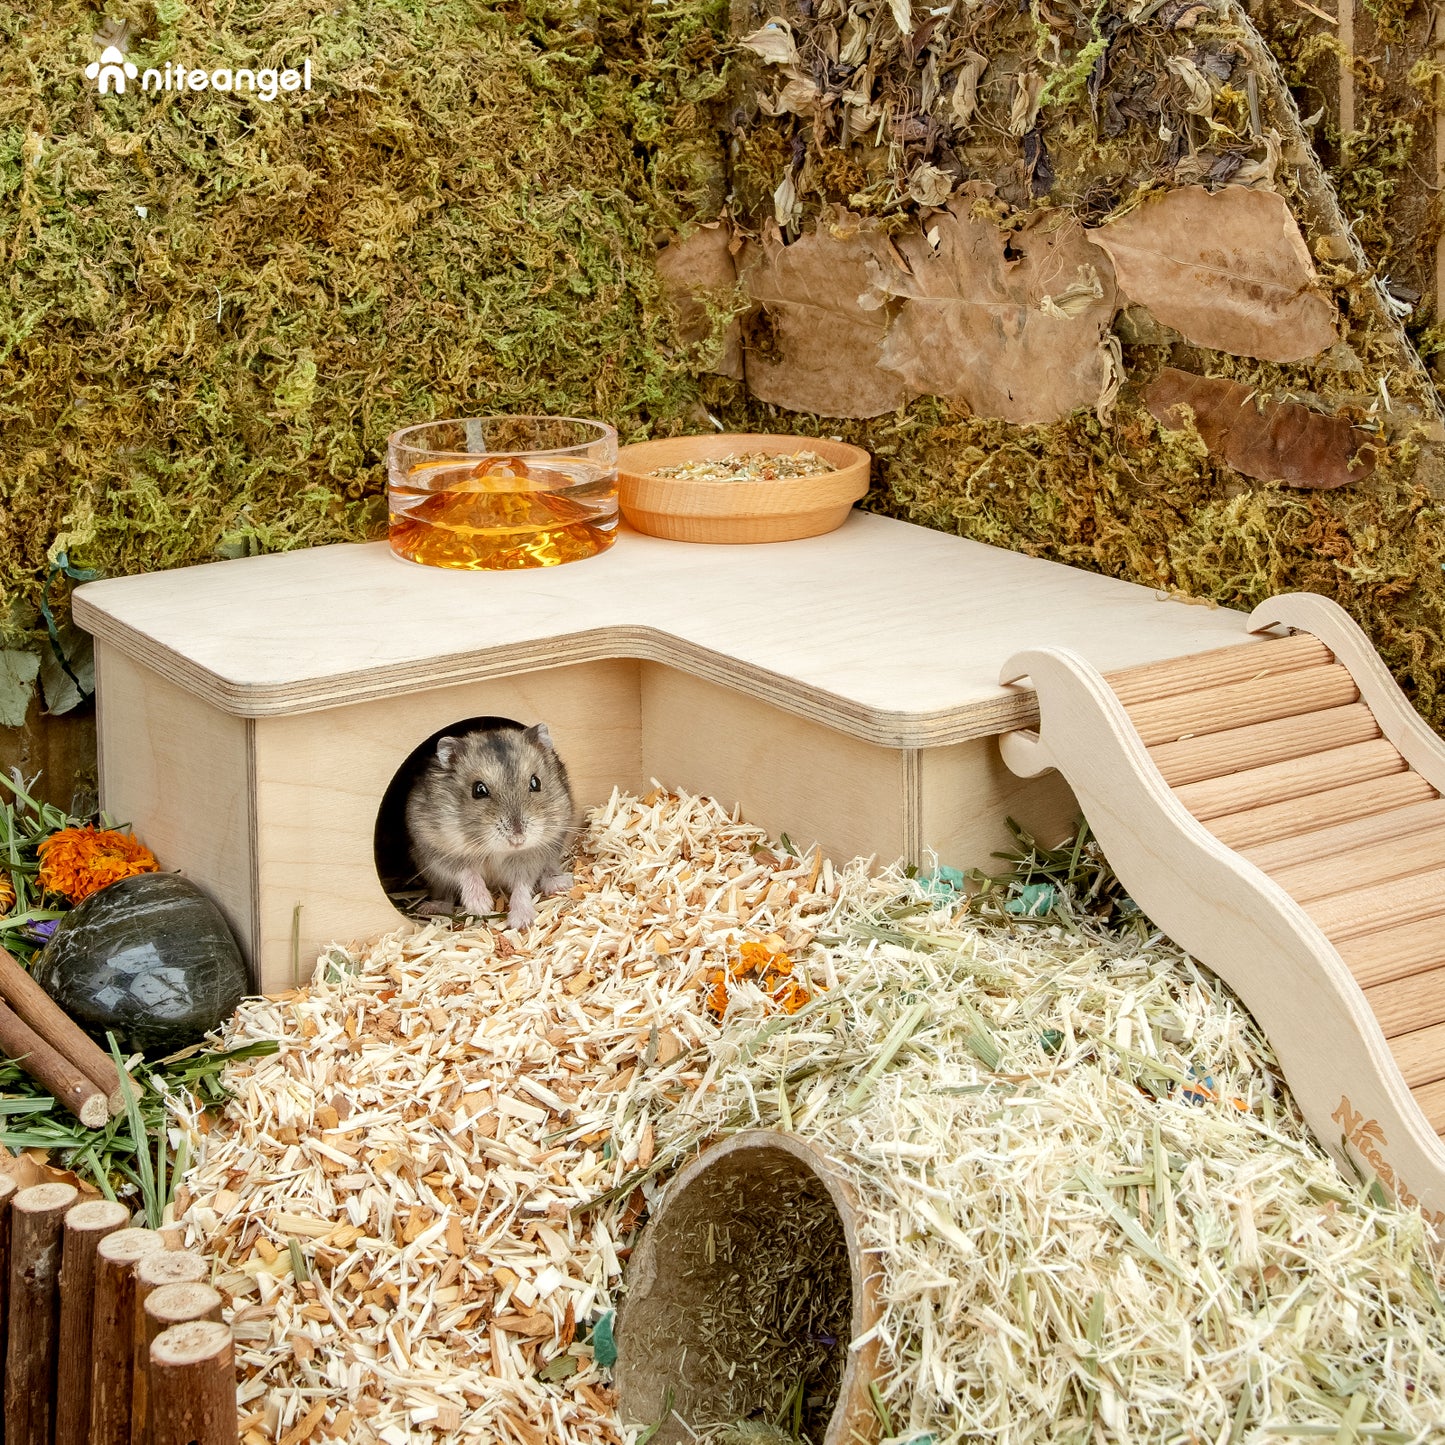 Niteangel Grande cachette en bois multi-chambres pour hamsters nains et syriens